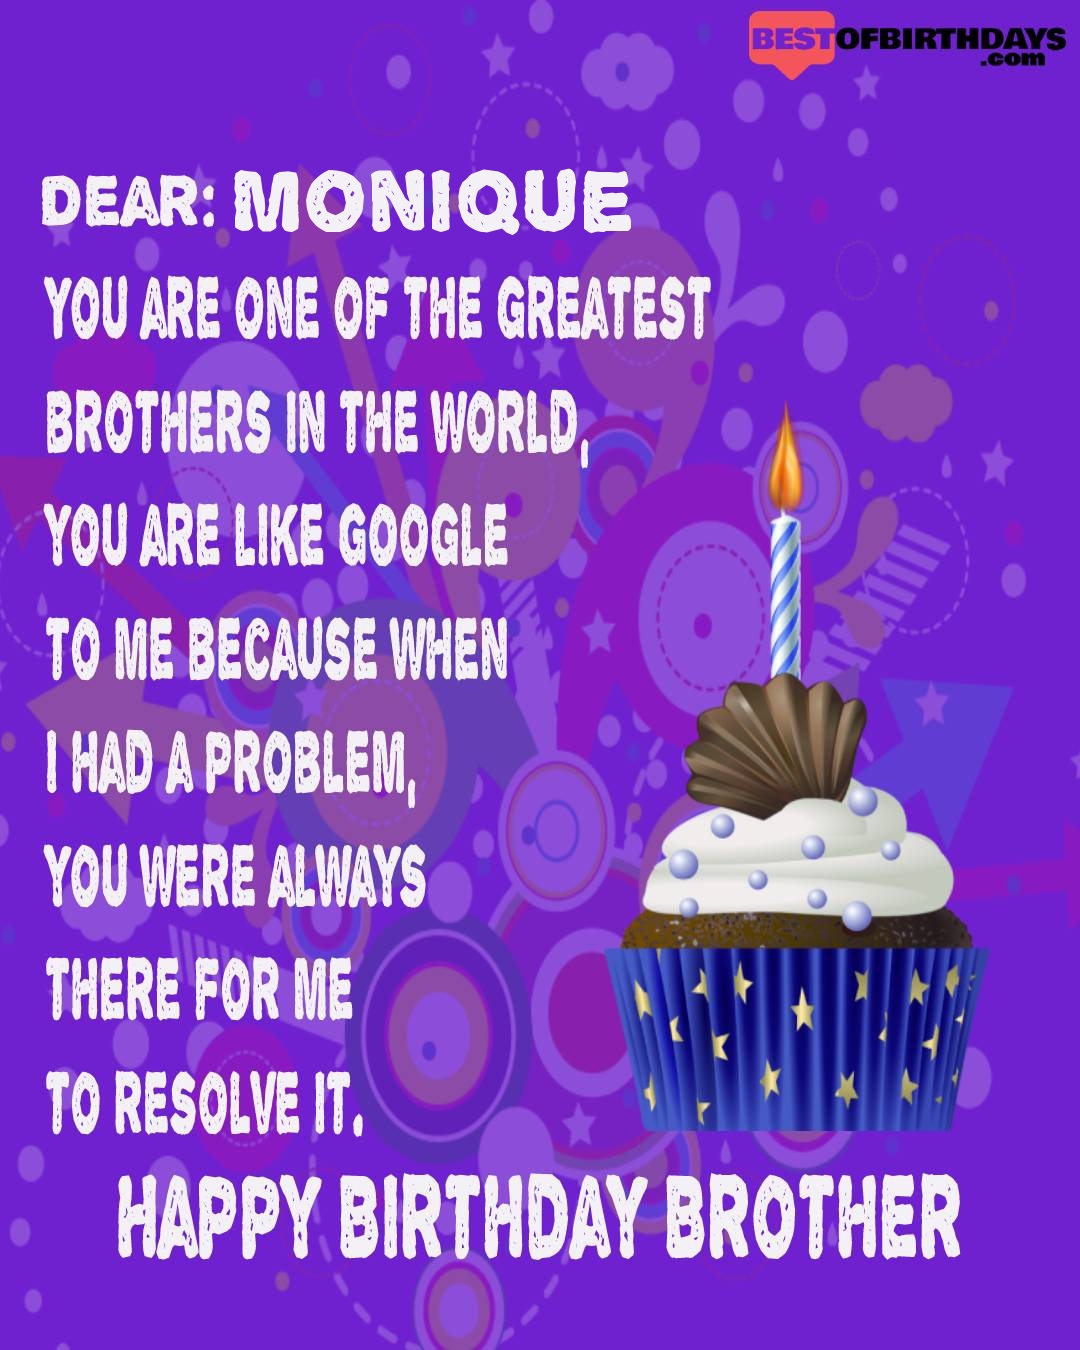 Happy birthday monique bhai brother bro